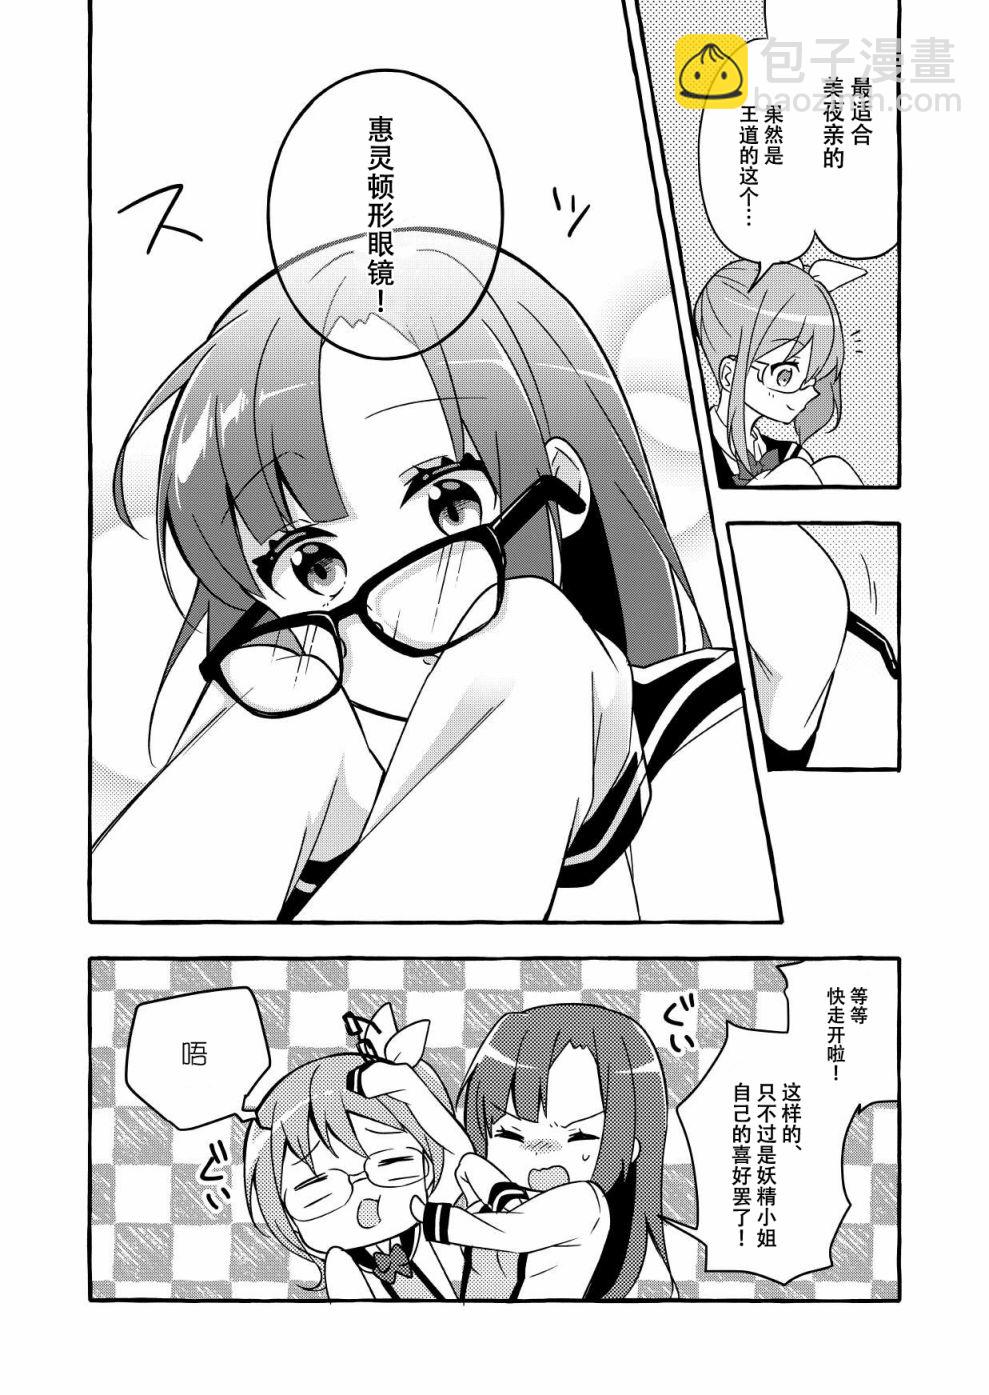 安蔵くんこ揭载短篇集 - 眼镜妖精和讨厌眼镜的我 - 5